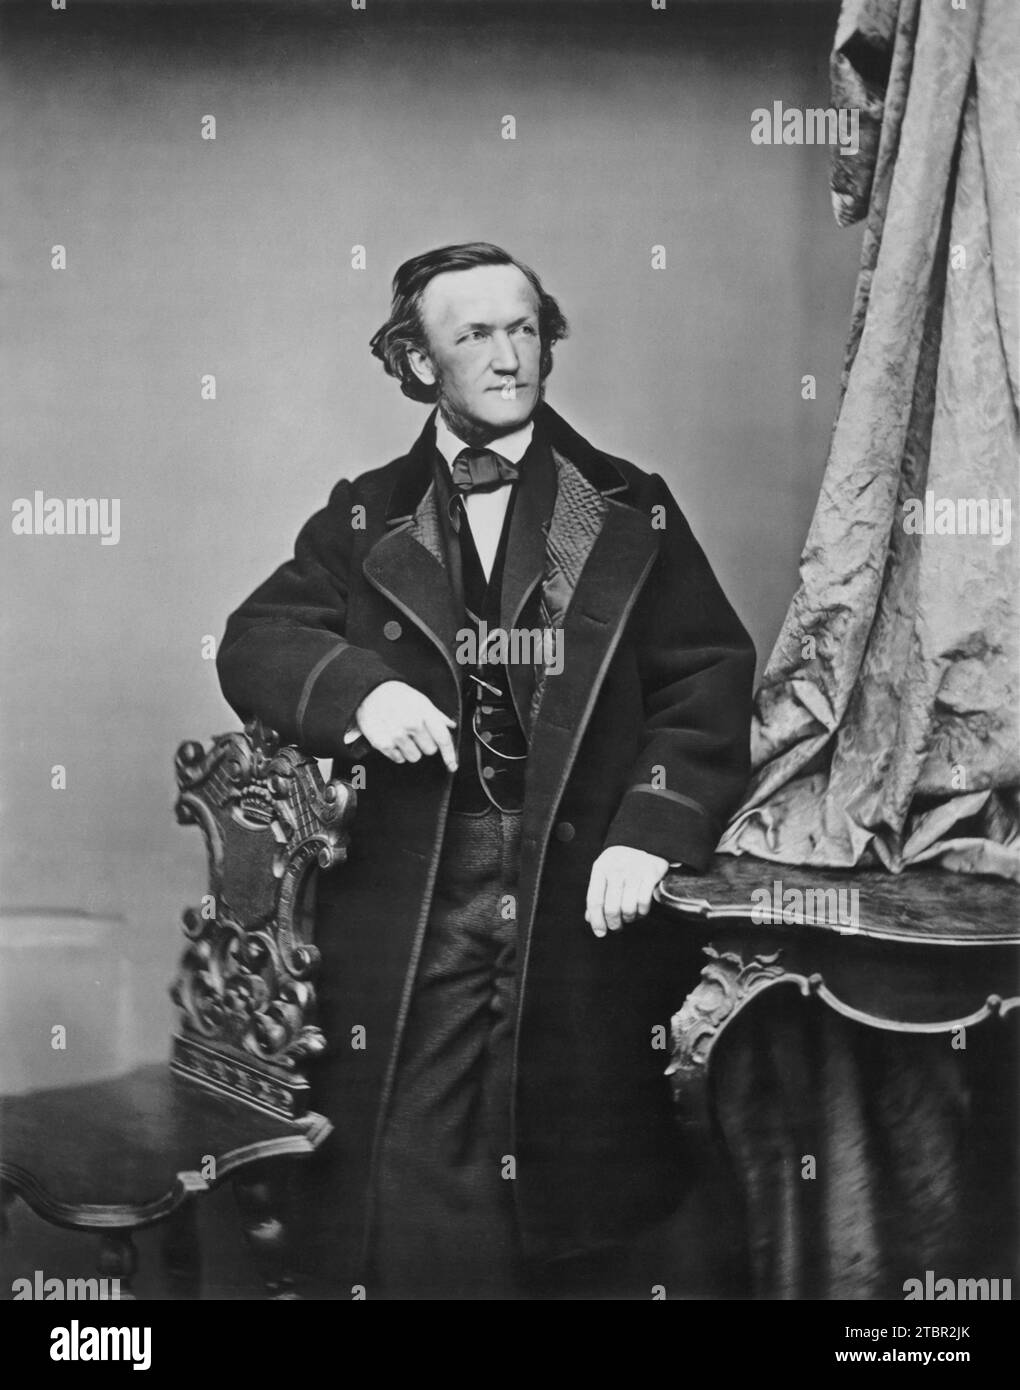 Richard Wagner vers 1860. Photographie de Franz Hanfstaengl. Remarque : le visage a été amélioré numériquement pour accentuer les détails. Banque D'Images